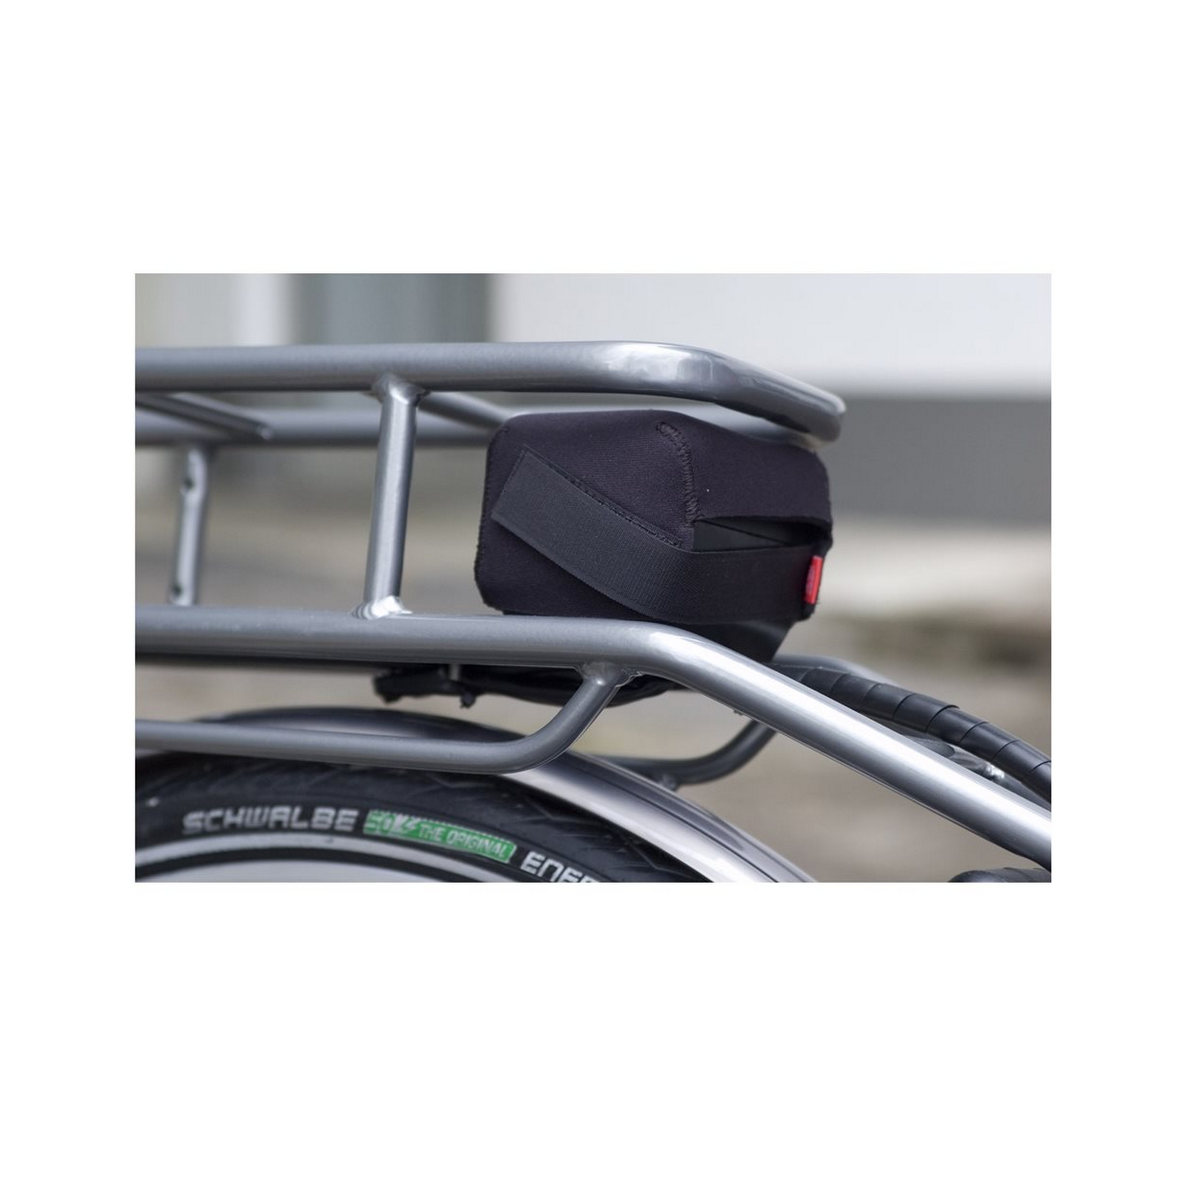 Tampa protetora tampa elétrica montagem em rack traseiro tamanho da bateria L / Bosch Yamaha Shimano